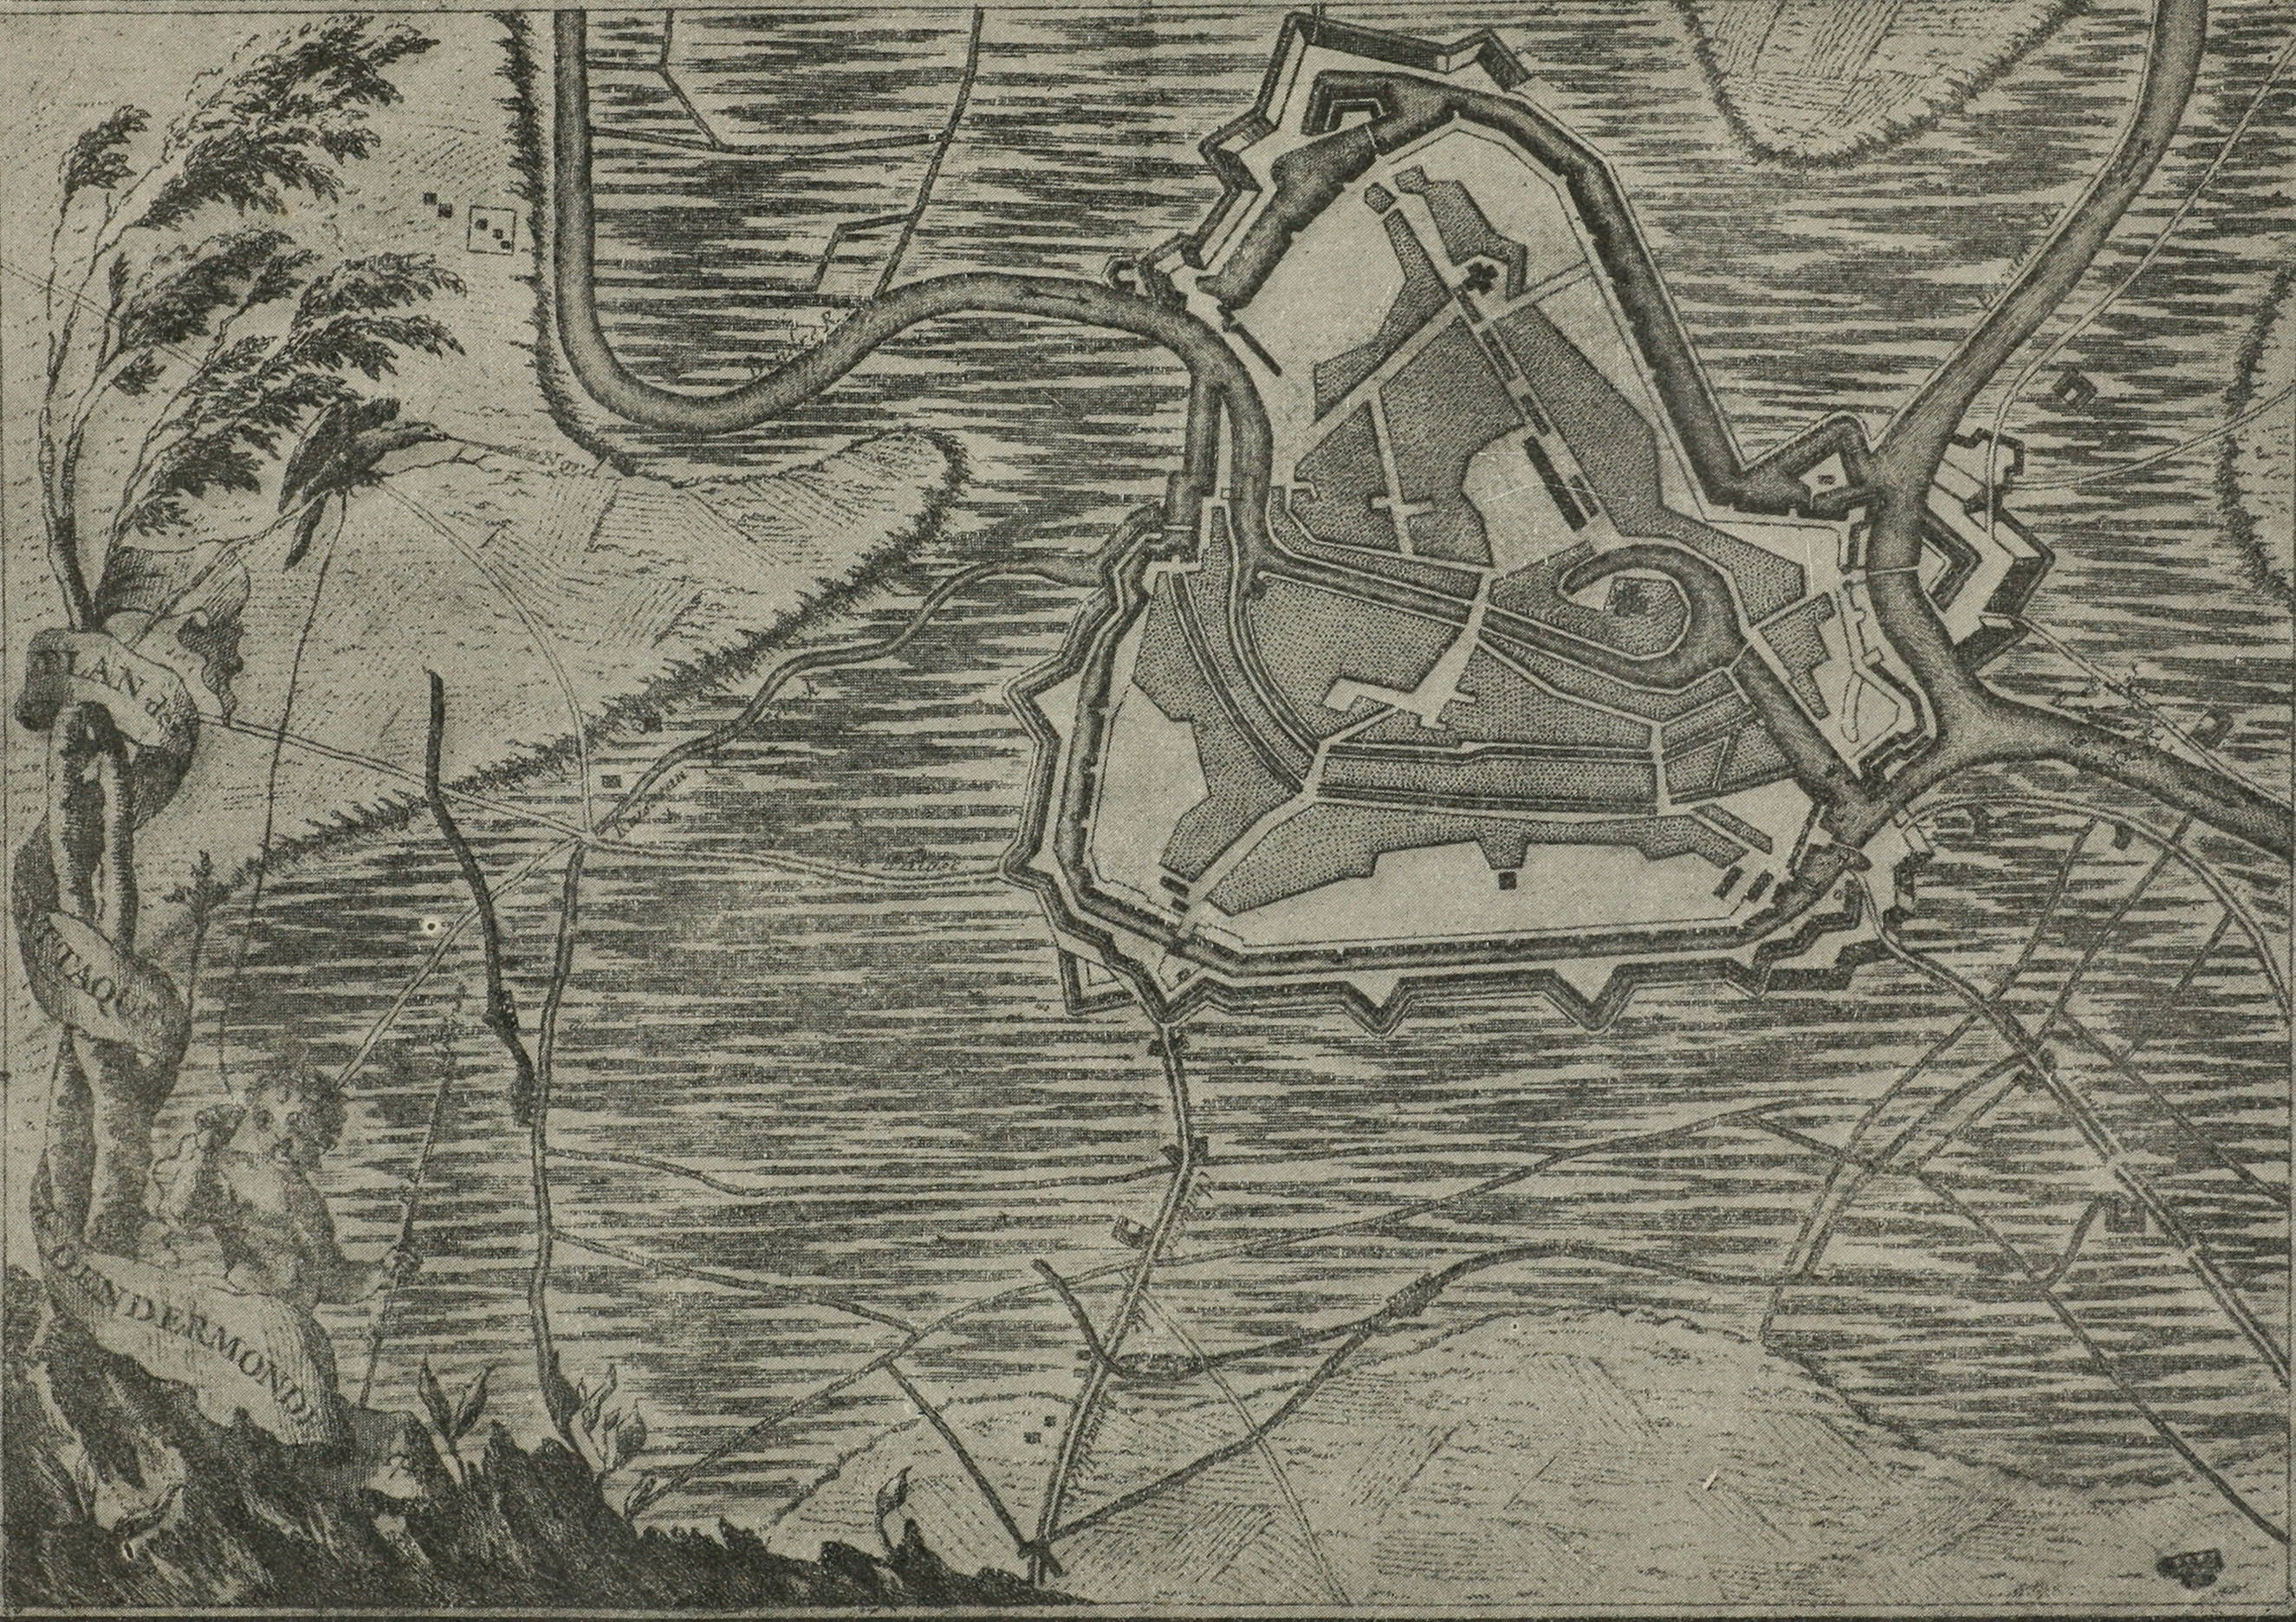 Планъ осады Дендермонда въ 1745 г.